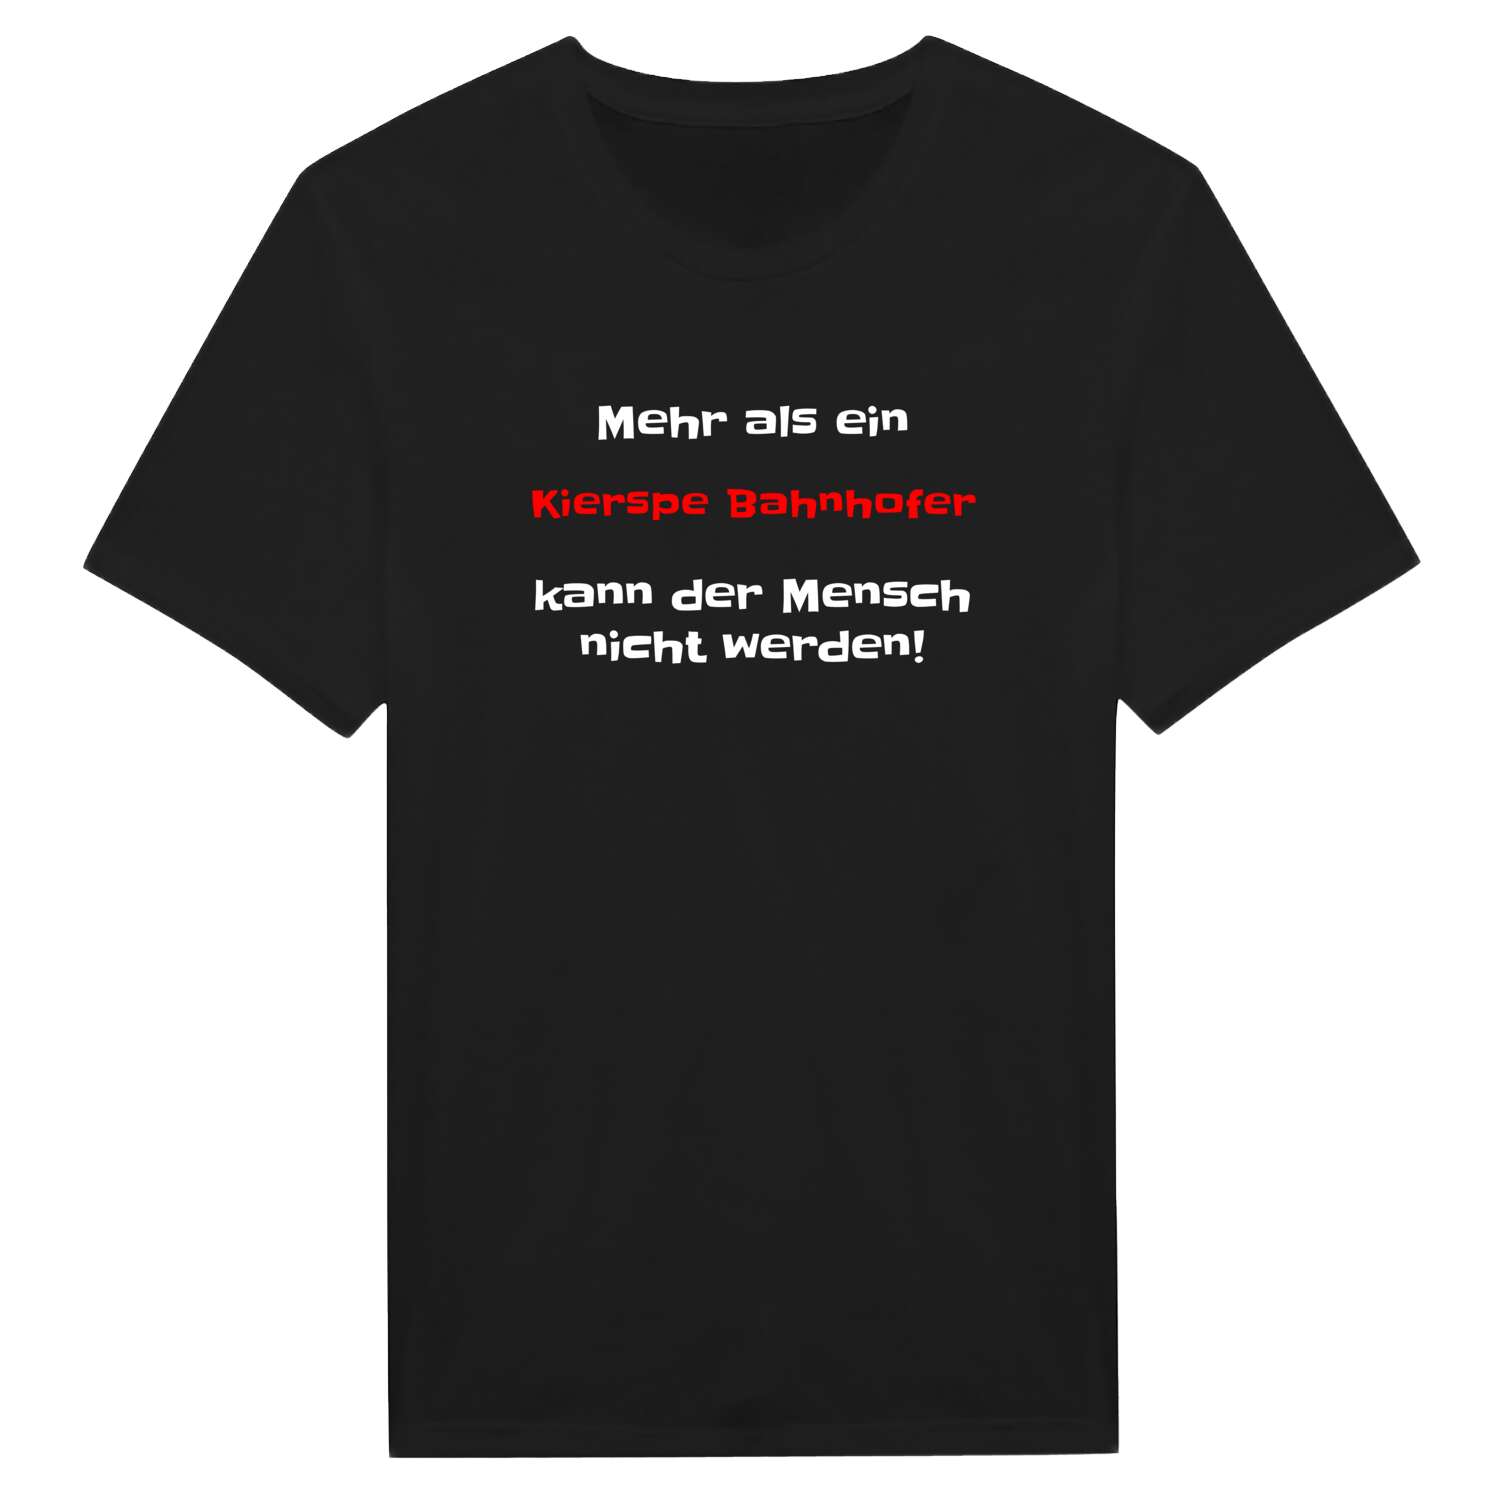 Kierspe Bahnhof T-Shirt »Mehr als ein«